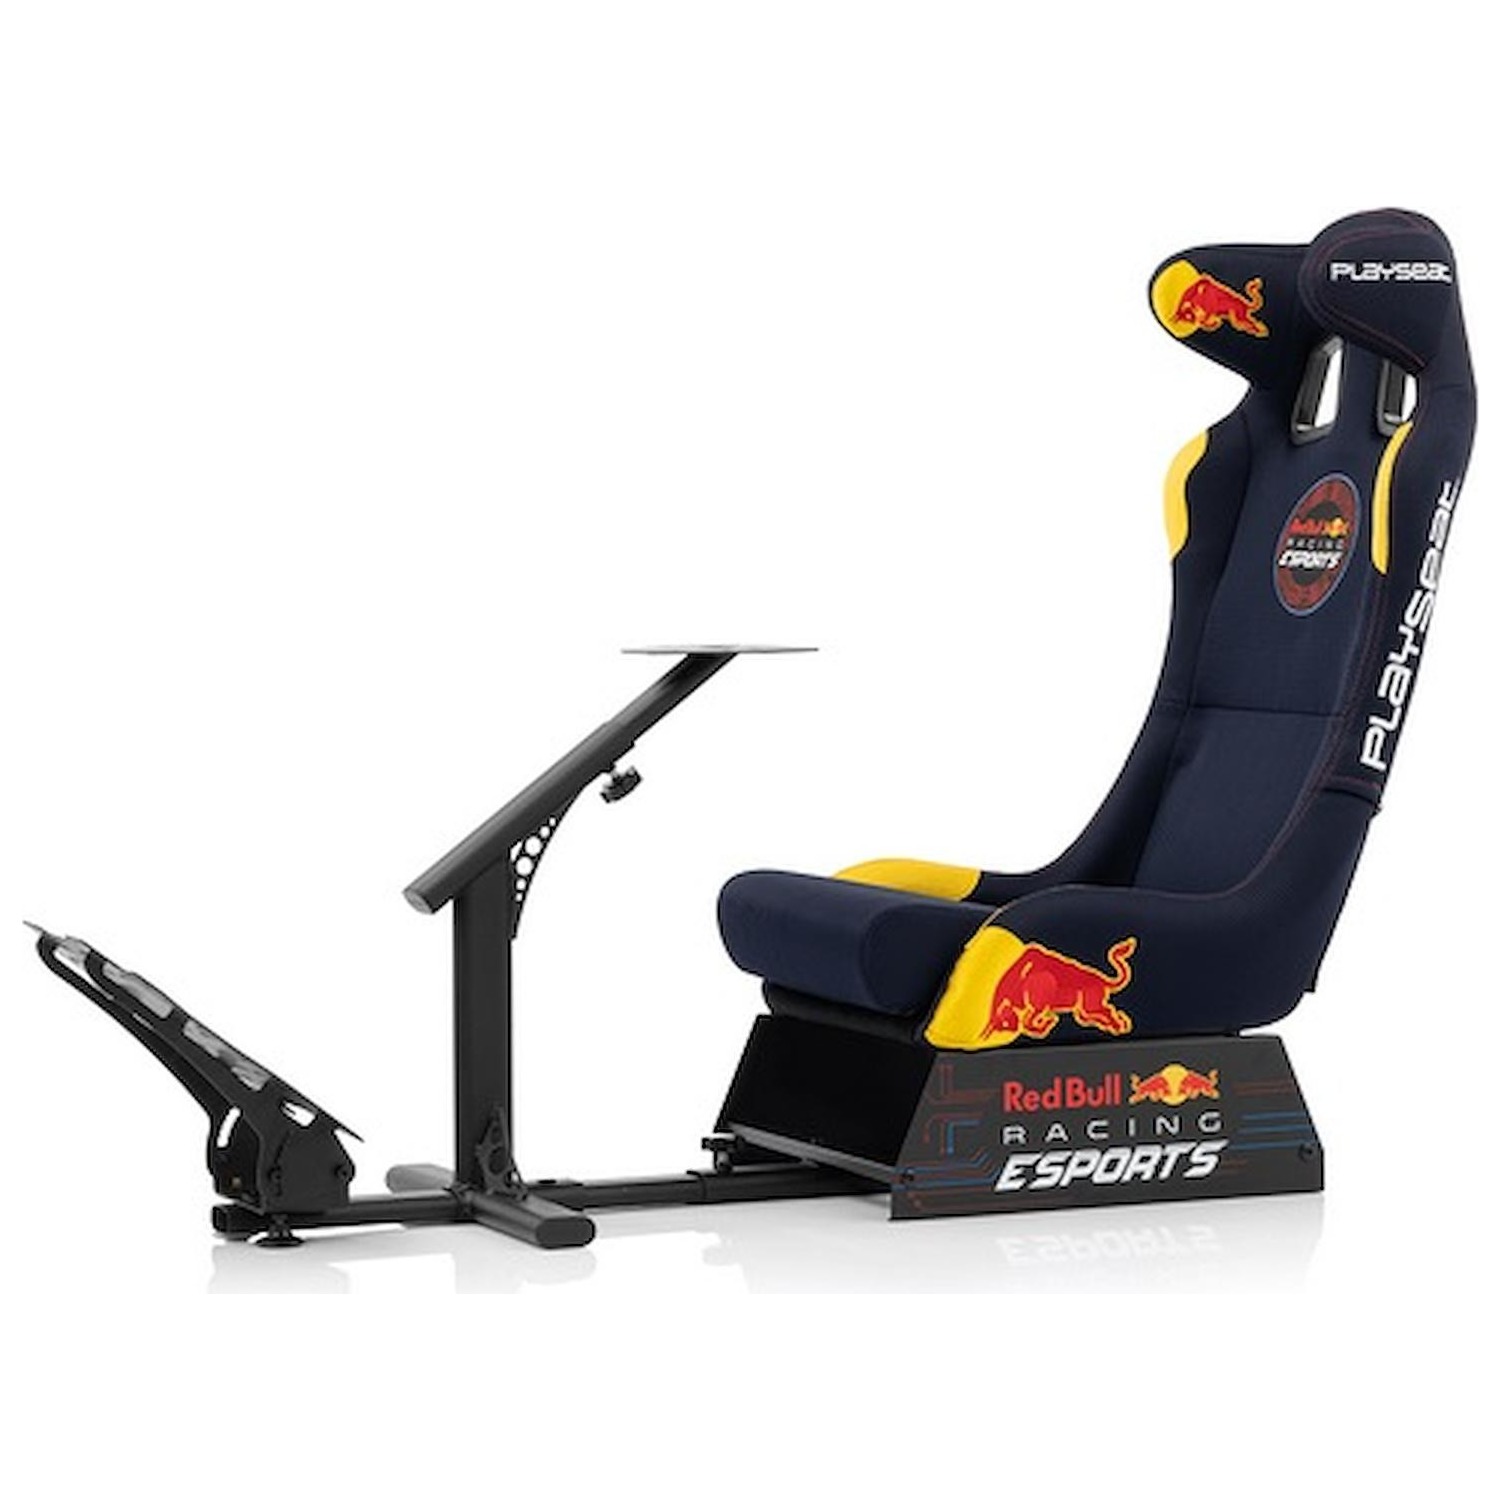 Immagine per Playseat Sedile Racing Red Bull Racing eSport con supporto per volante da DIMOStore